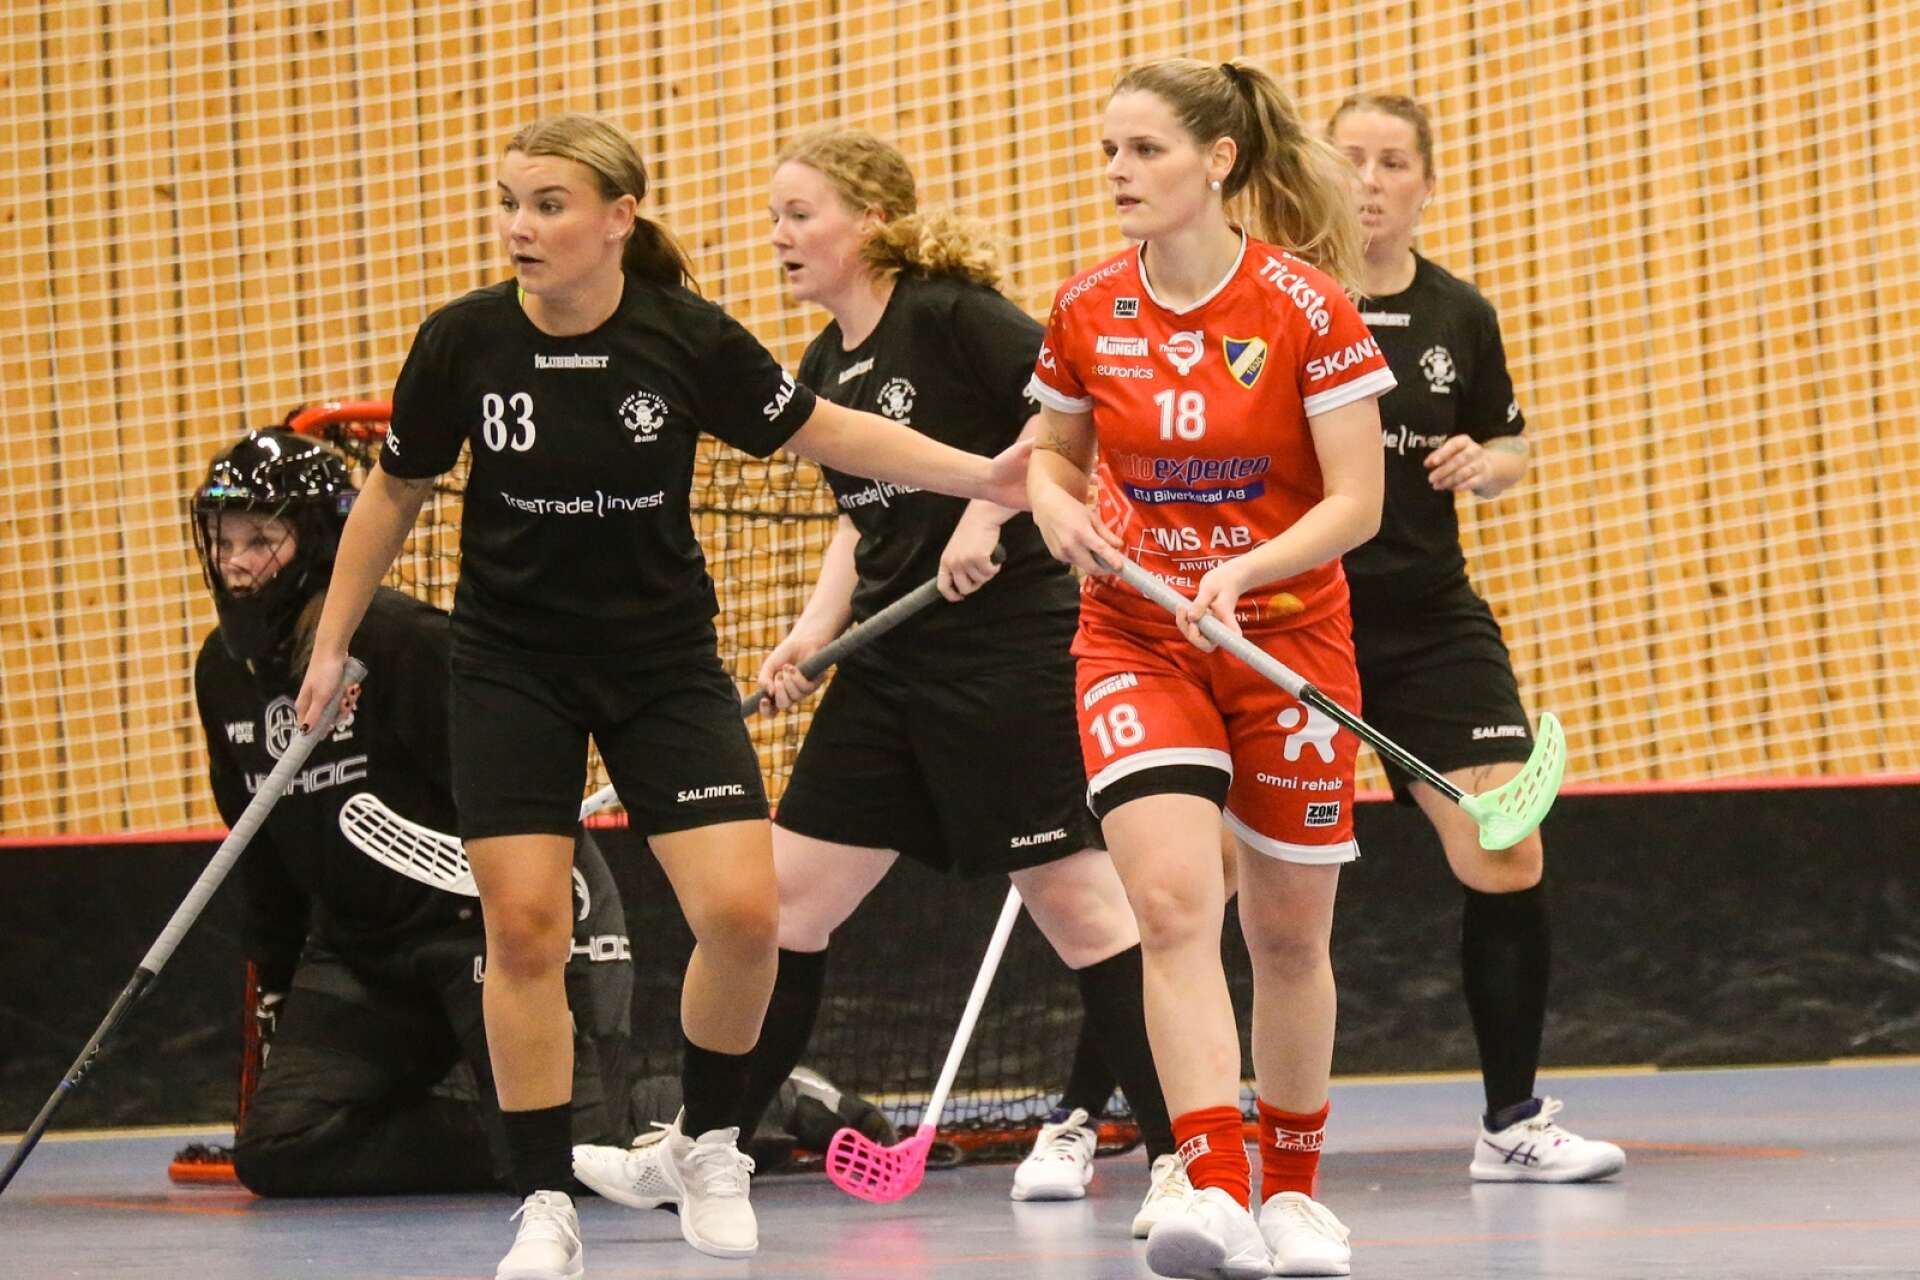 Västvärmländskan Amanda Josefsson som spelade med Dottevik ifjol, här i närkamp med målskytten Josefine Holmqvist-Göthberg, svarade för tre assists i matchen.